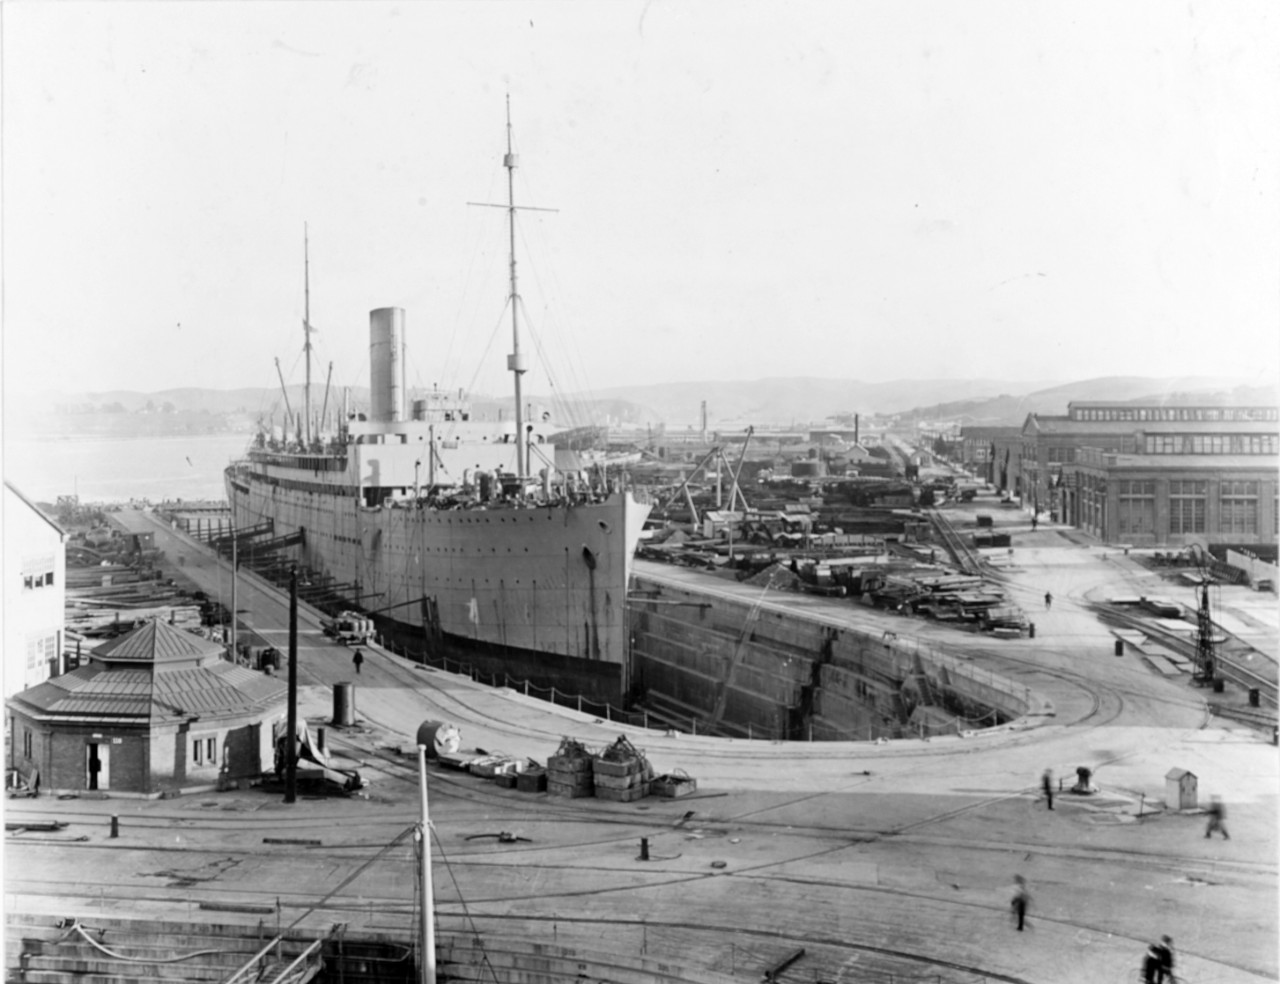 HMS ORBITA